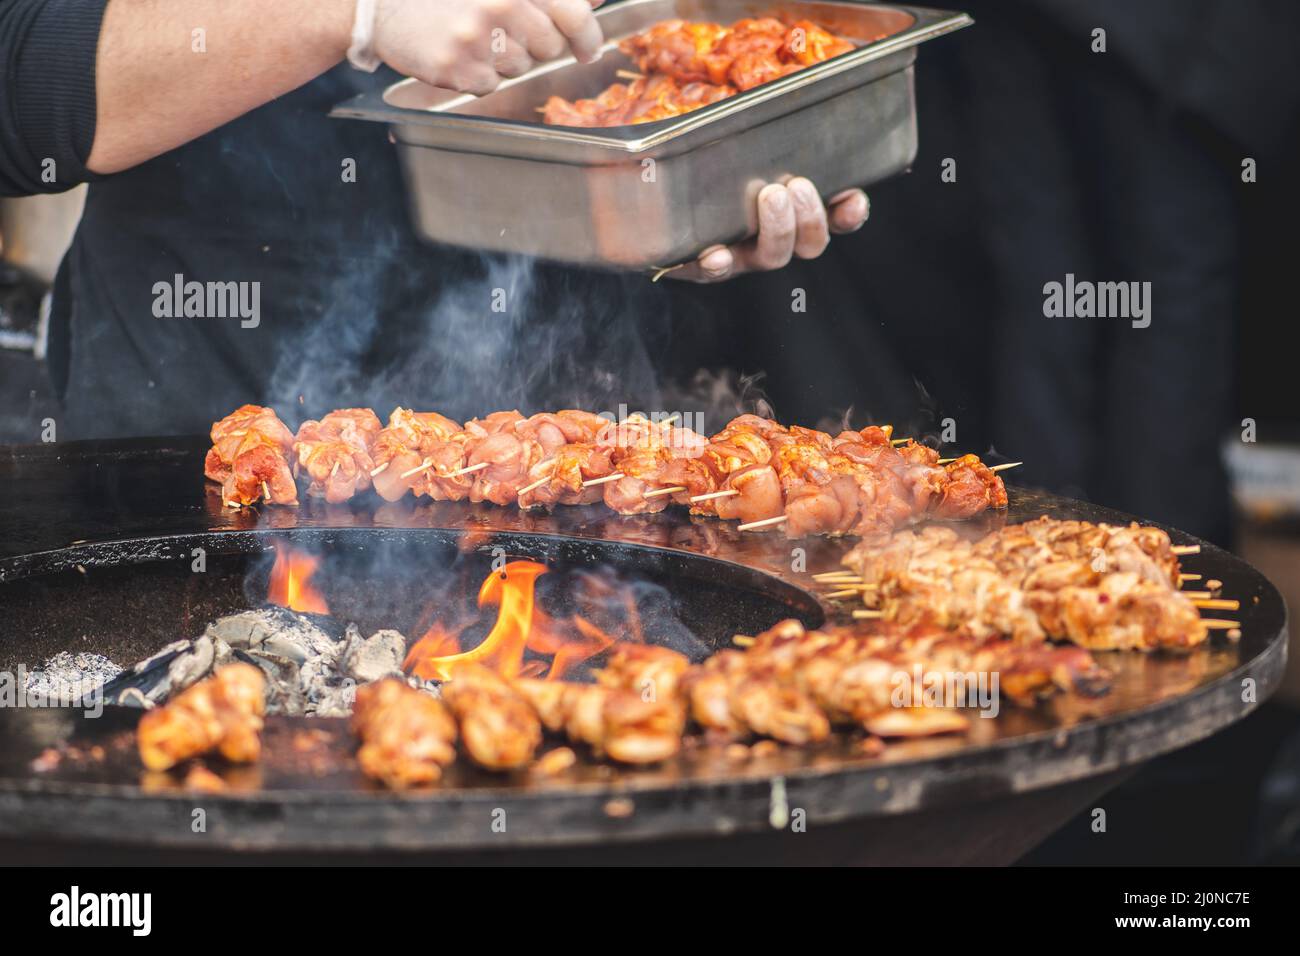 Preparare spiedini di carne di pollo, grigliati o arrostiti in un barbecue a fuoco aperto e fiamme, shashlik o shashlik per un pic-nic con pitchforks, chiudere Foto Stock